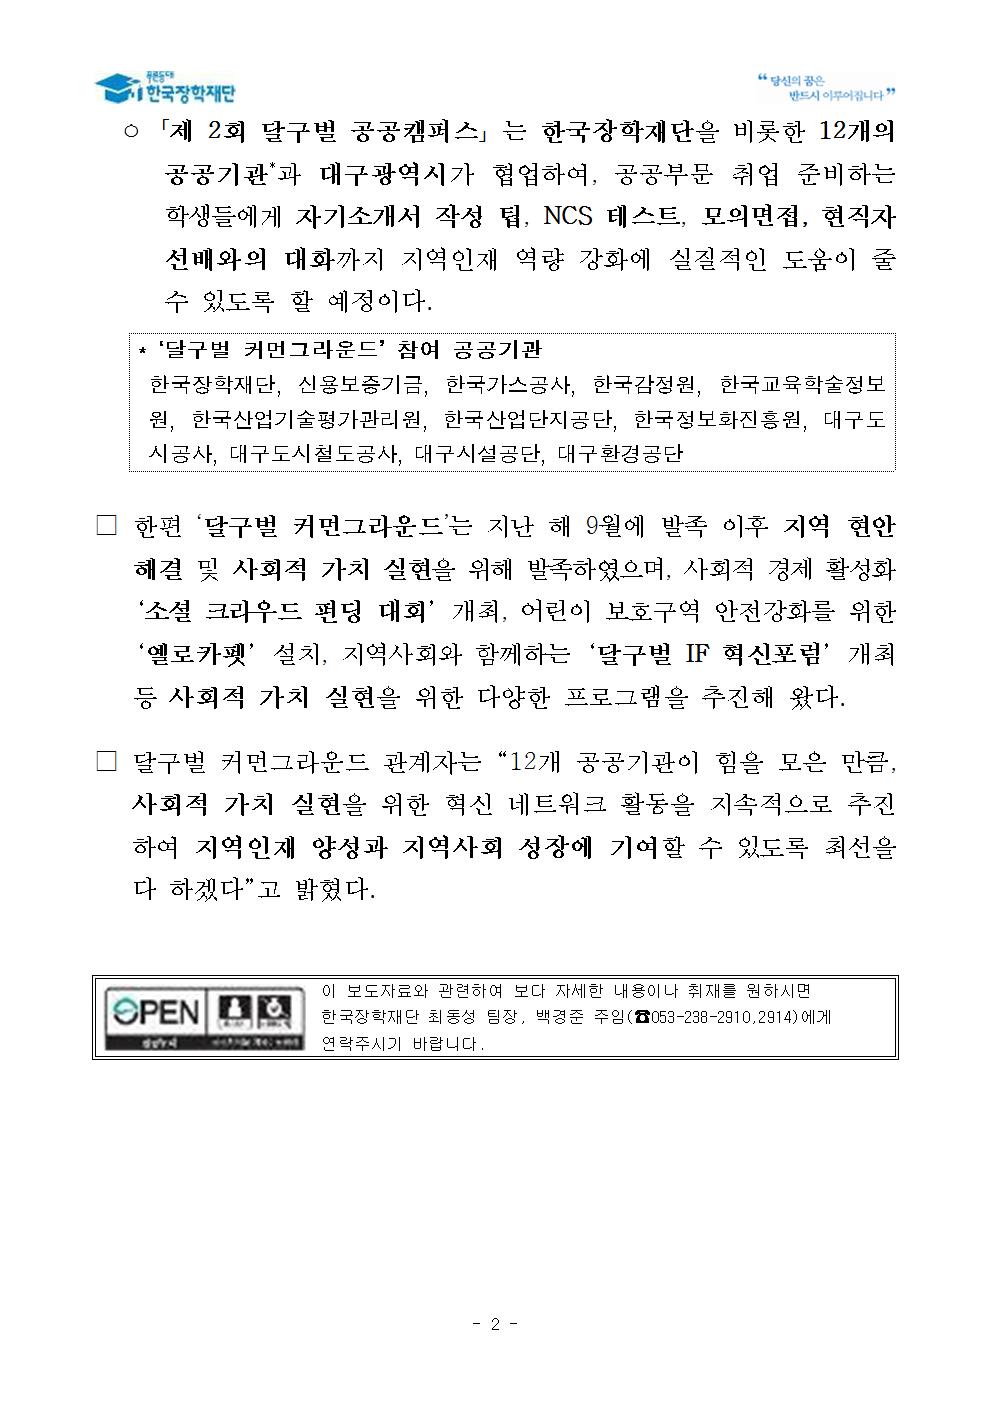 11-05(화)[보도자료] 지역인재 역량강화를 위한 제2회 달구벌 공공캠퍼스 개최002.jpg